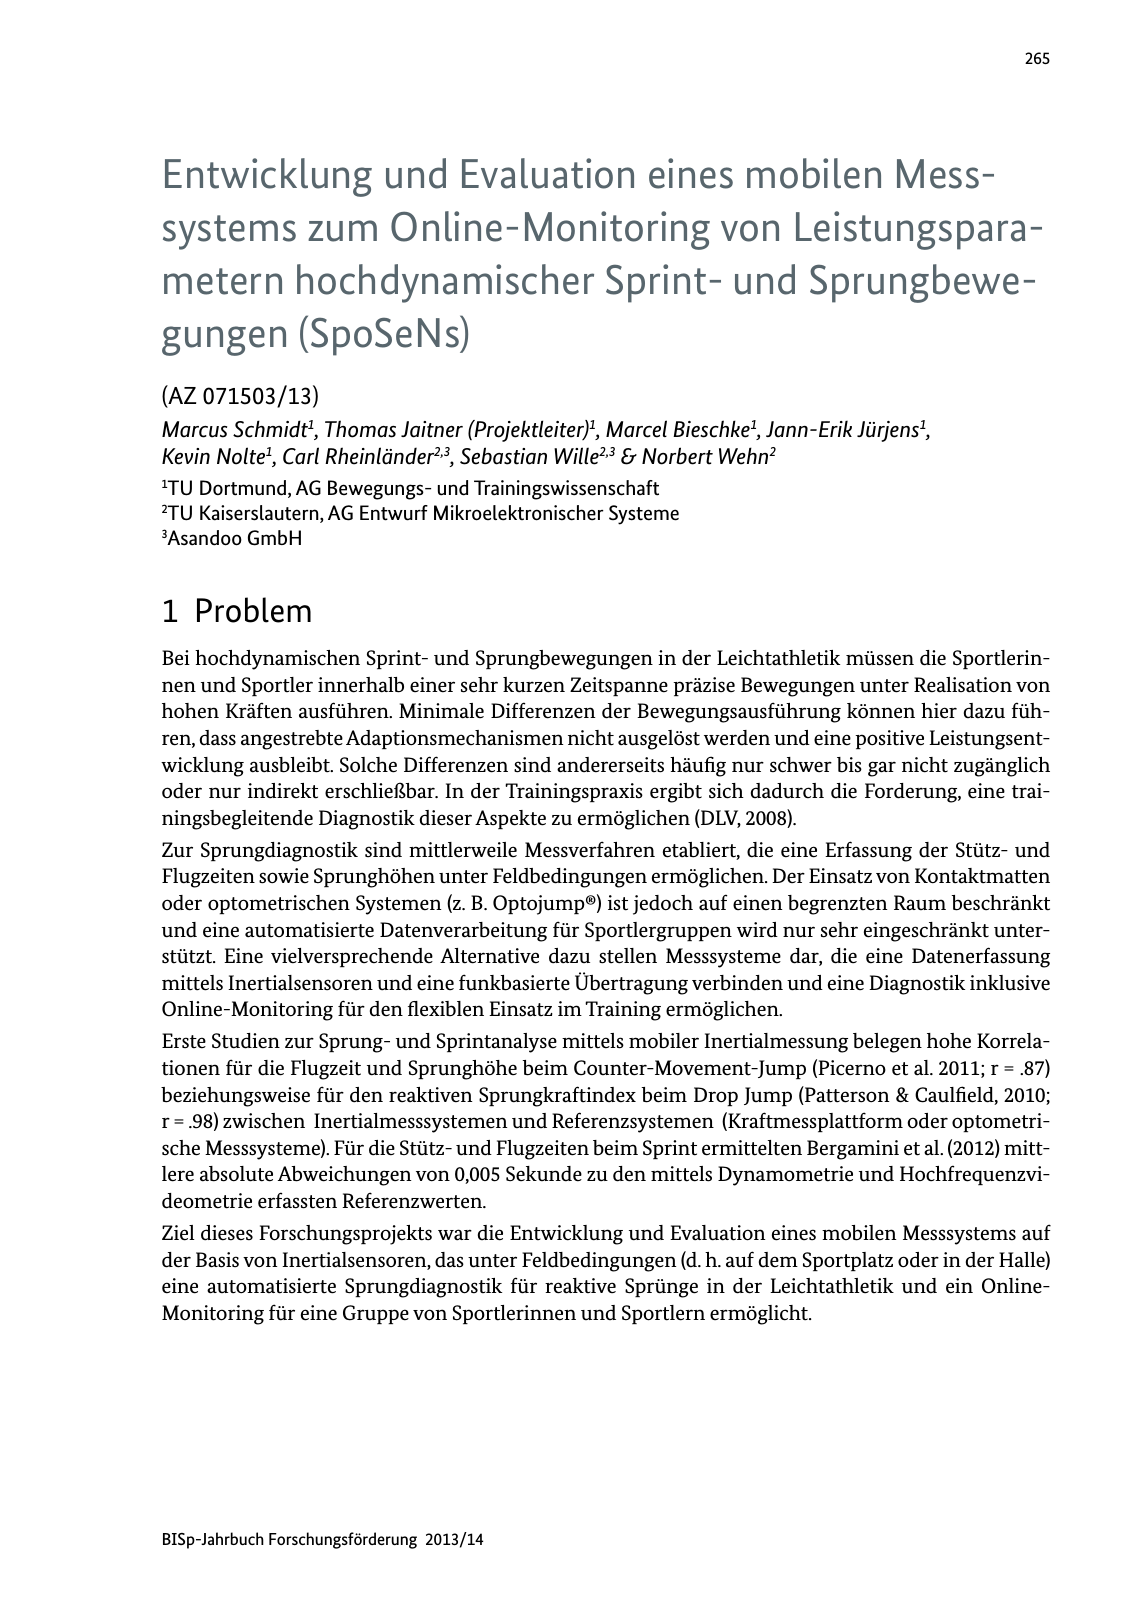 Vorschau BISp-Jahrbuch Forschungsförderung 2013/14 Seite 266